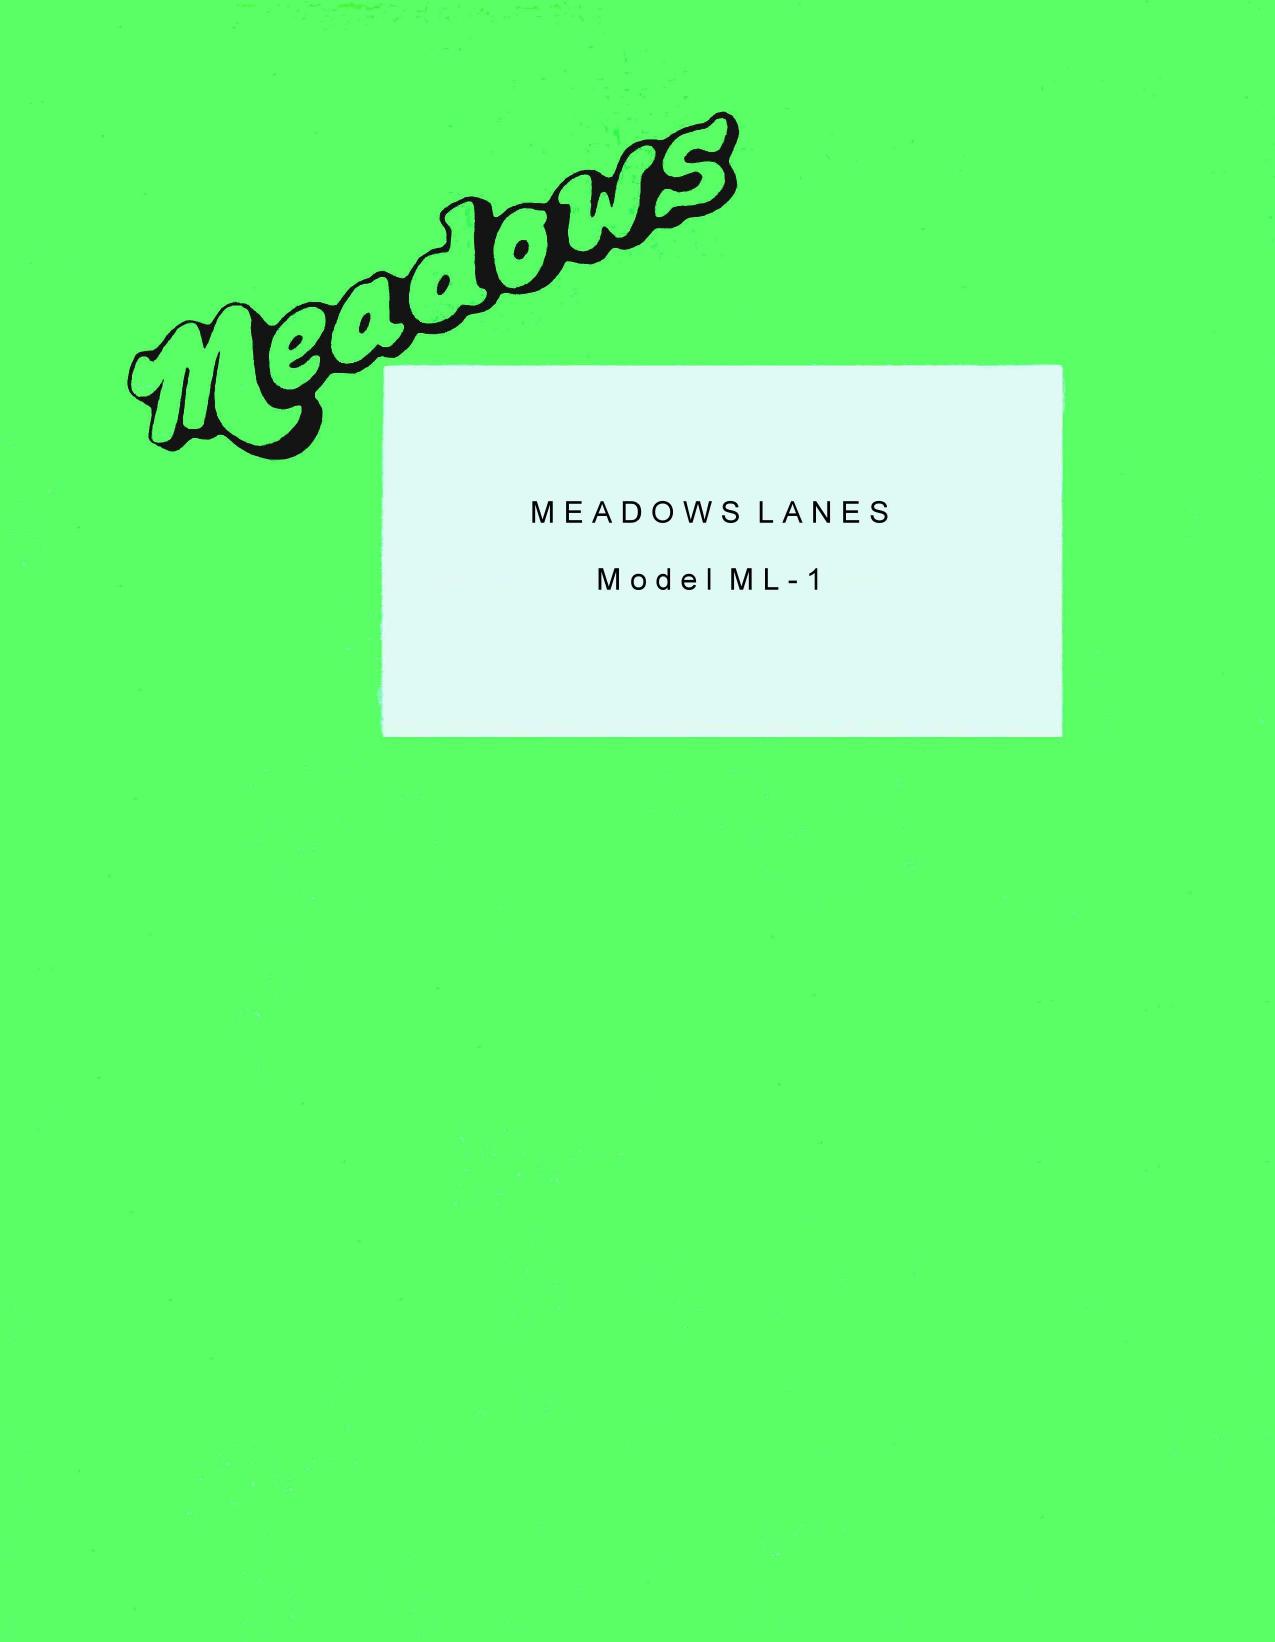 Meadows Lane